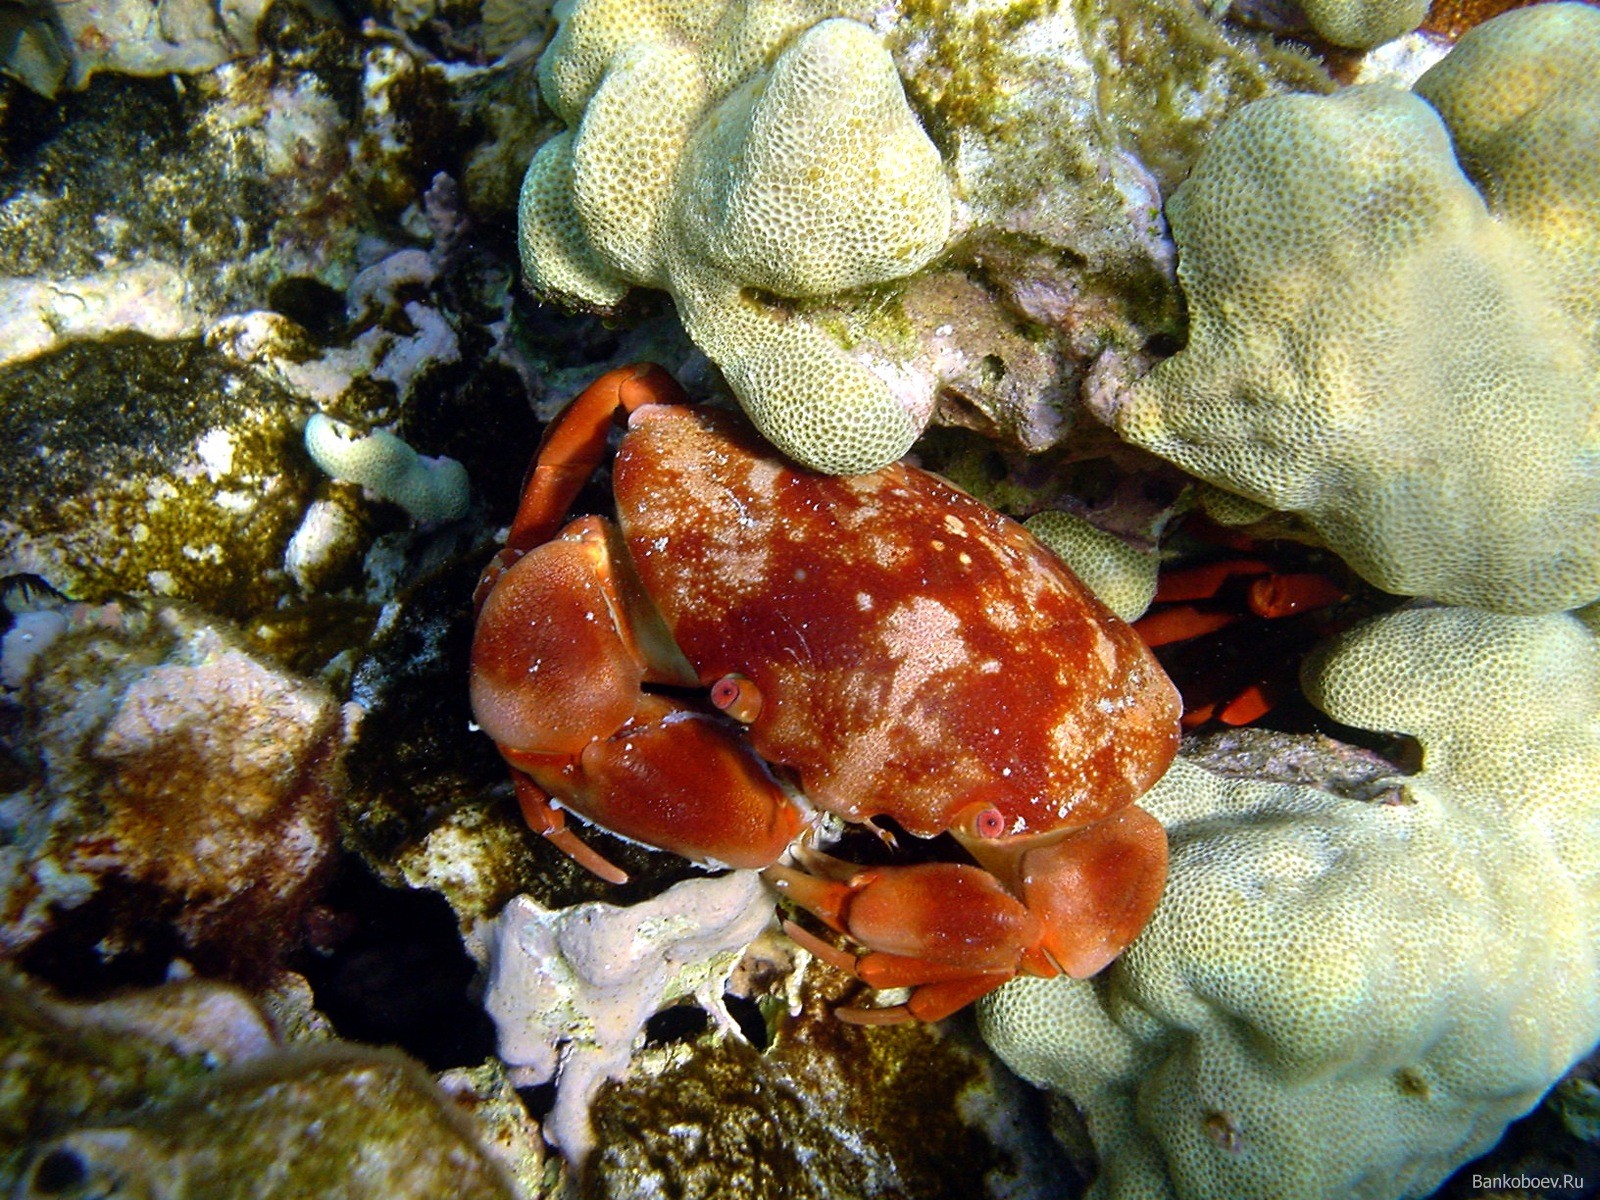 Underwater Sea Crabs Coral Crustaceans 1600x1200